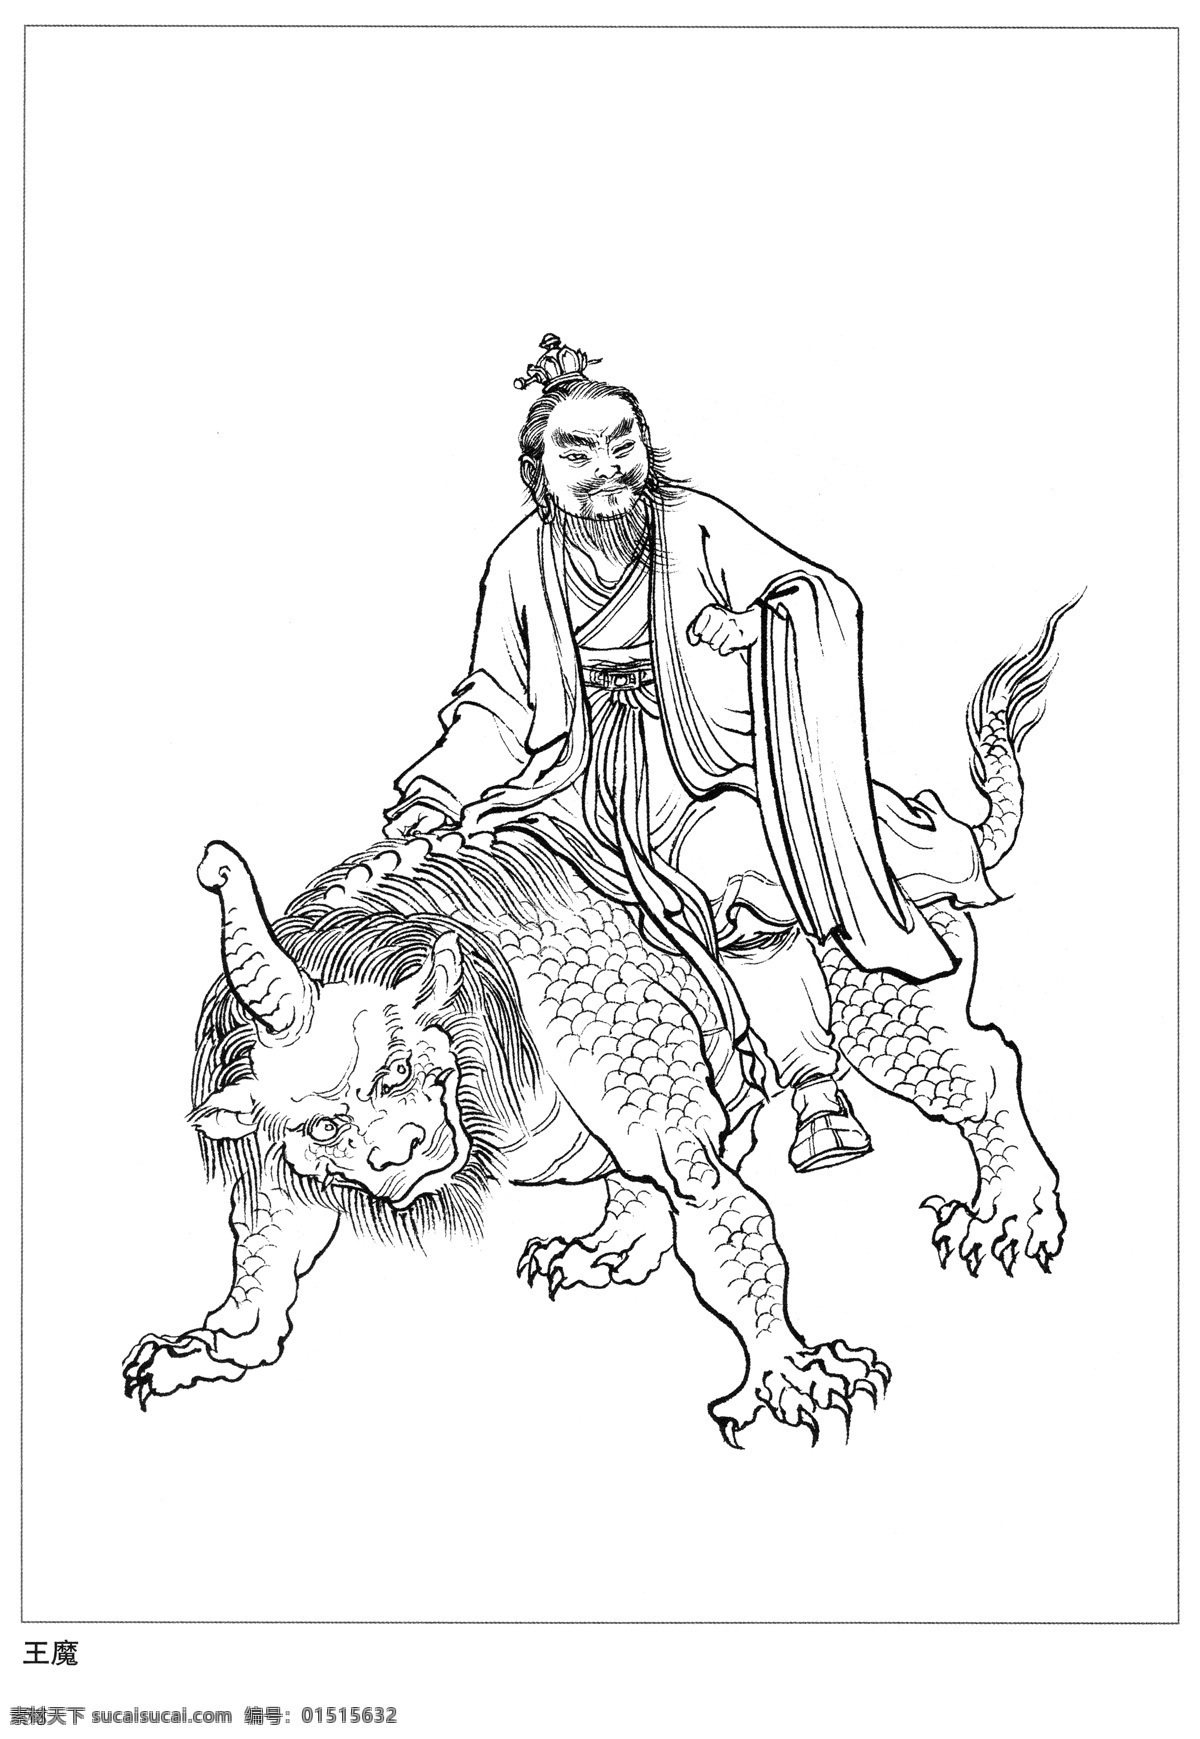 王魔 封神演义 古代 神仙 白描 人物 图 文化艺术 传统文化